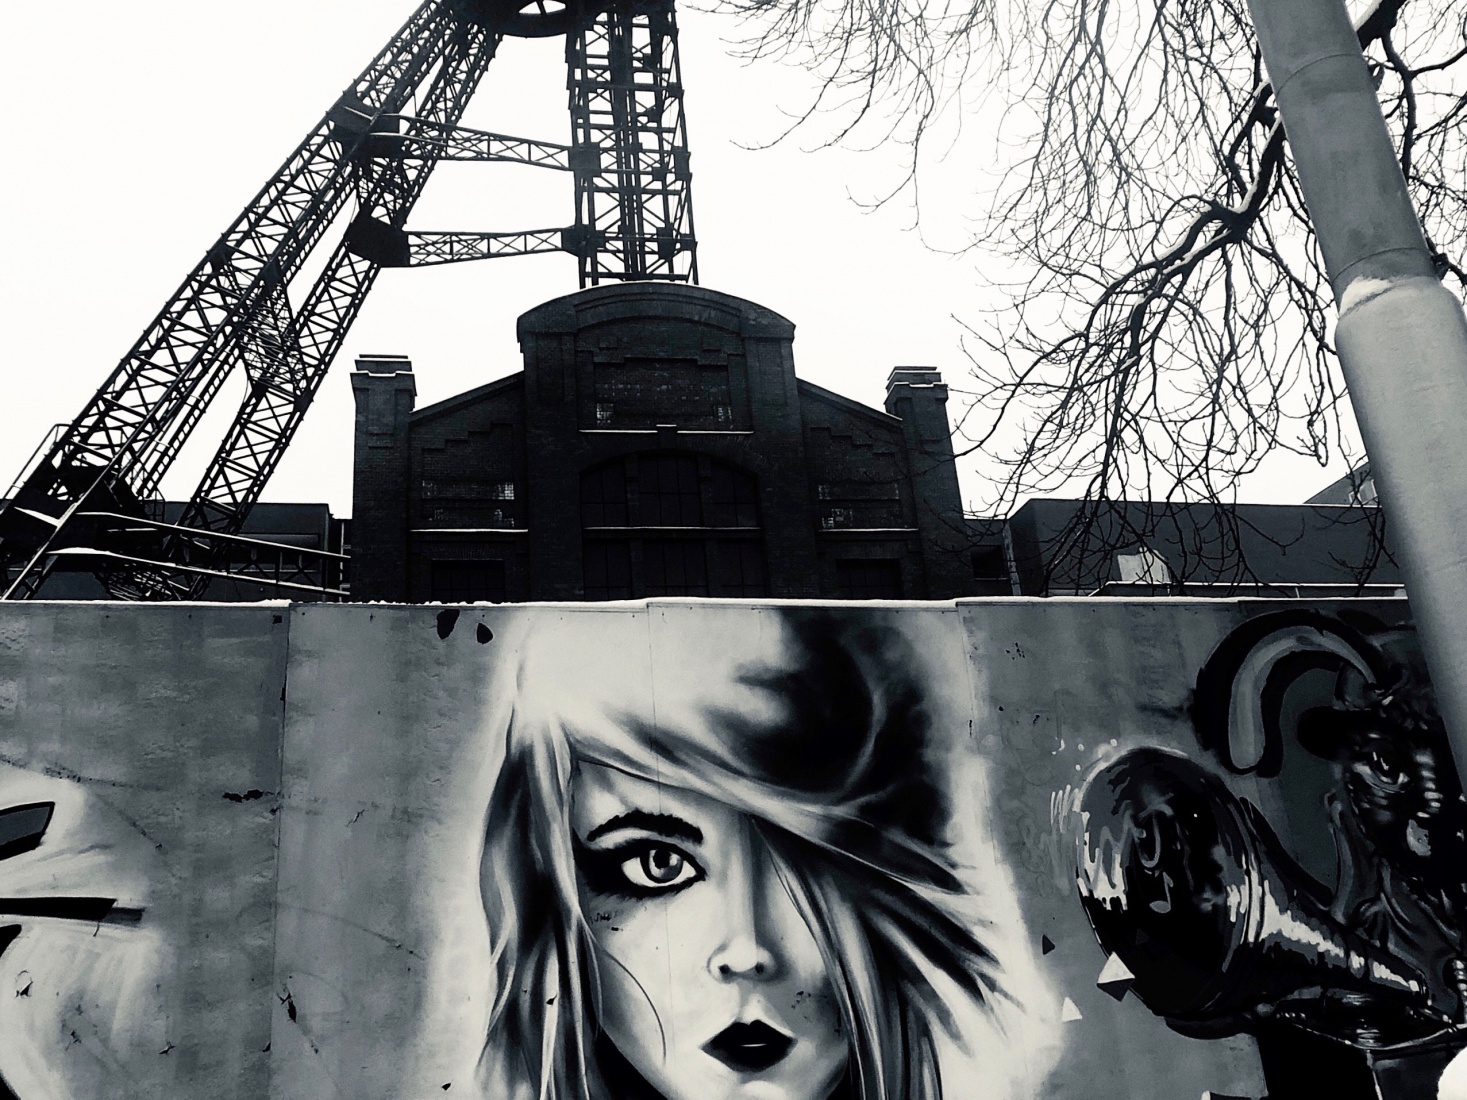 Street art in Ostrava, Czech Republic.